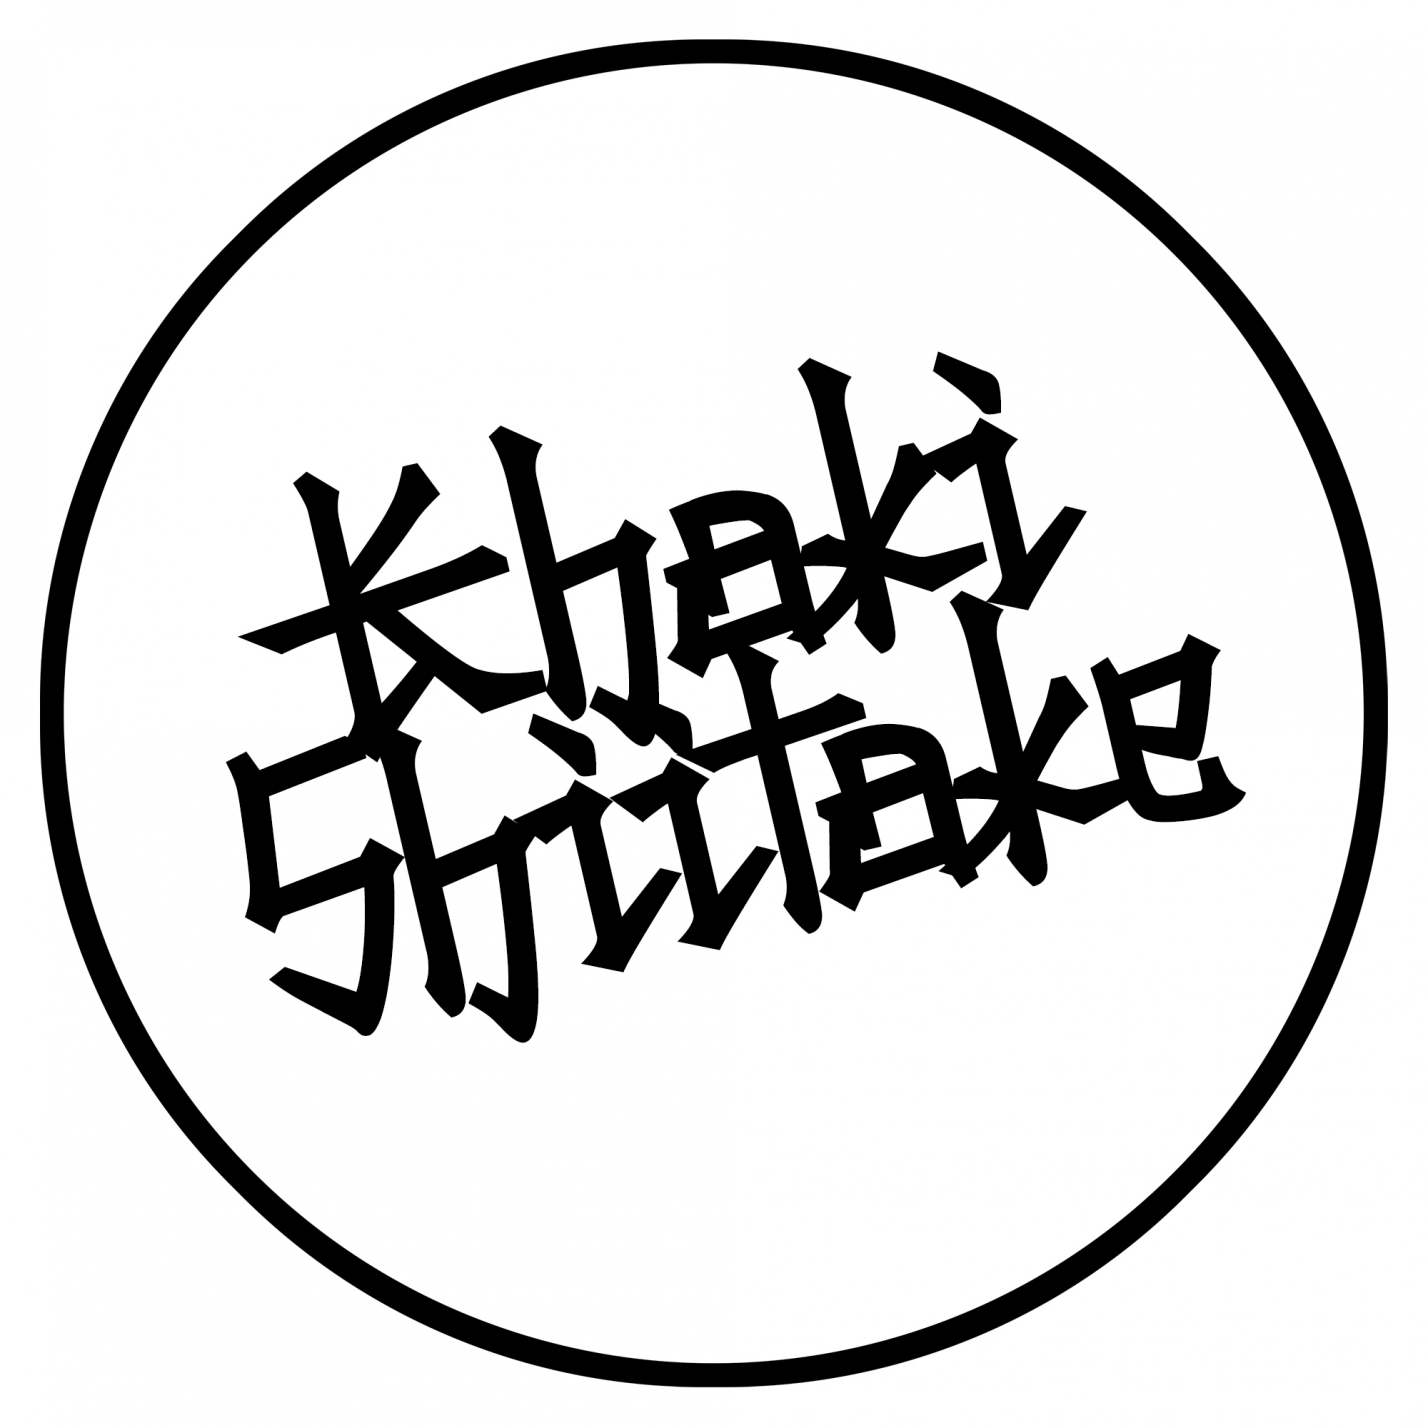 Khaki Shiitake Logo